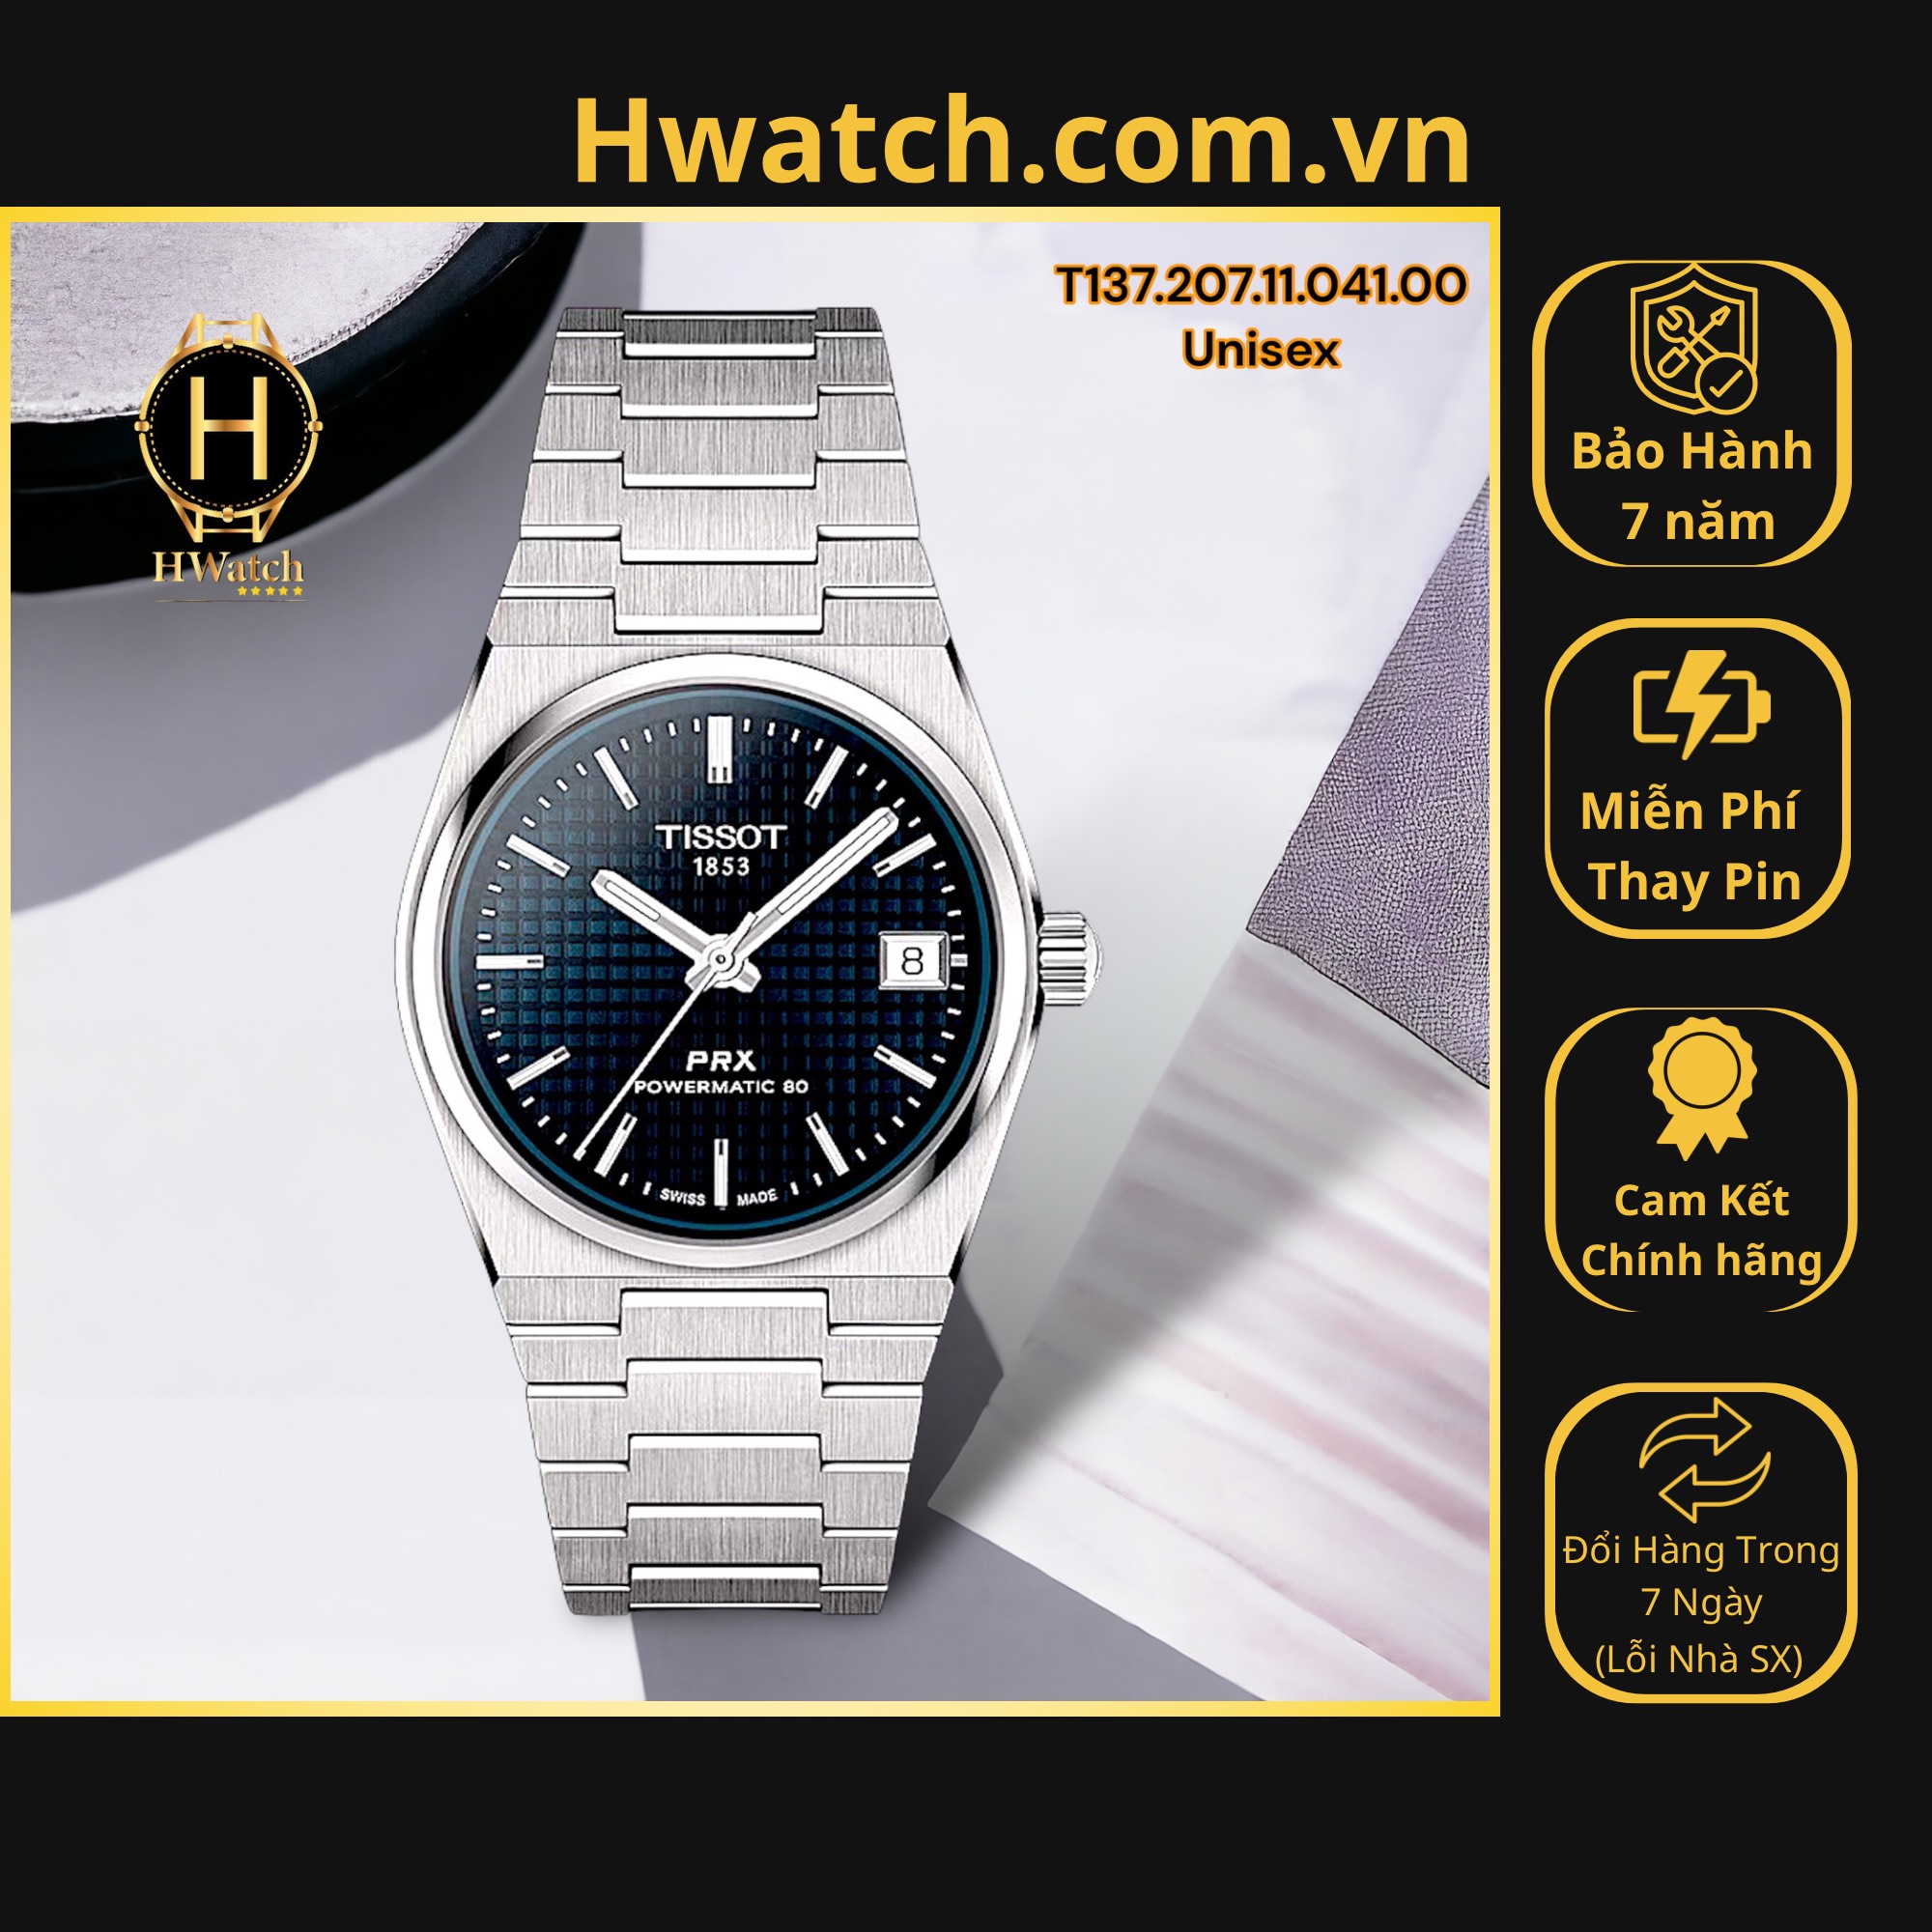 [Có sẵn] [Chính hãng] Đồng Hồ Unisex Tissot Automatic T137.207.11.041.00 PRX Powermatic 80 Blue Dial 35mm Hwatch.com.vn